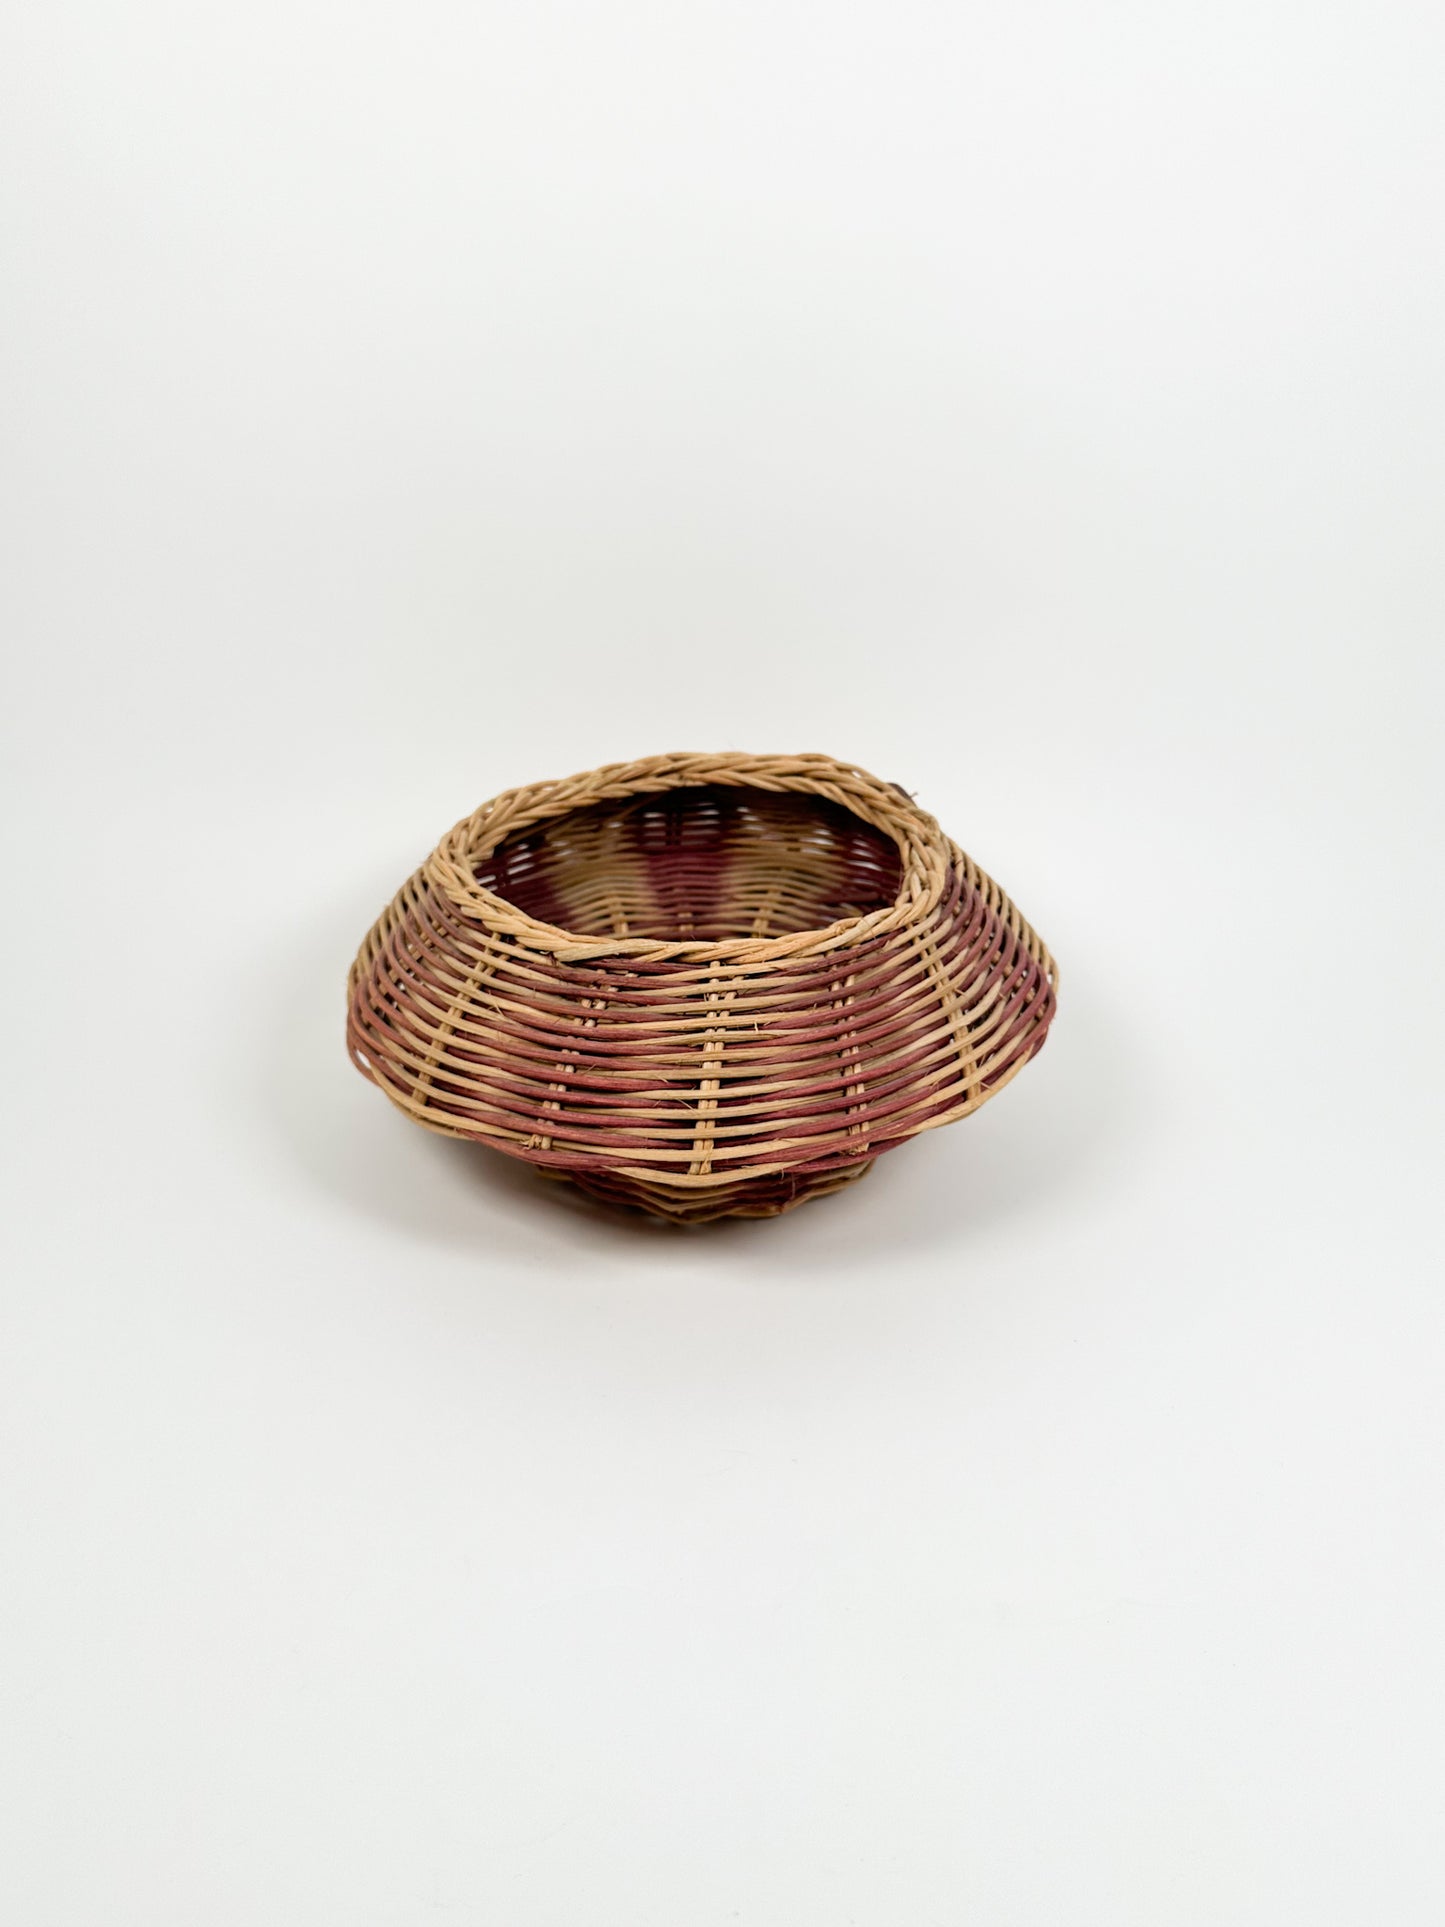 Vintage Round Striped Wicker Basket